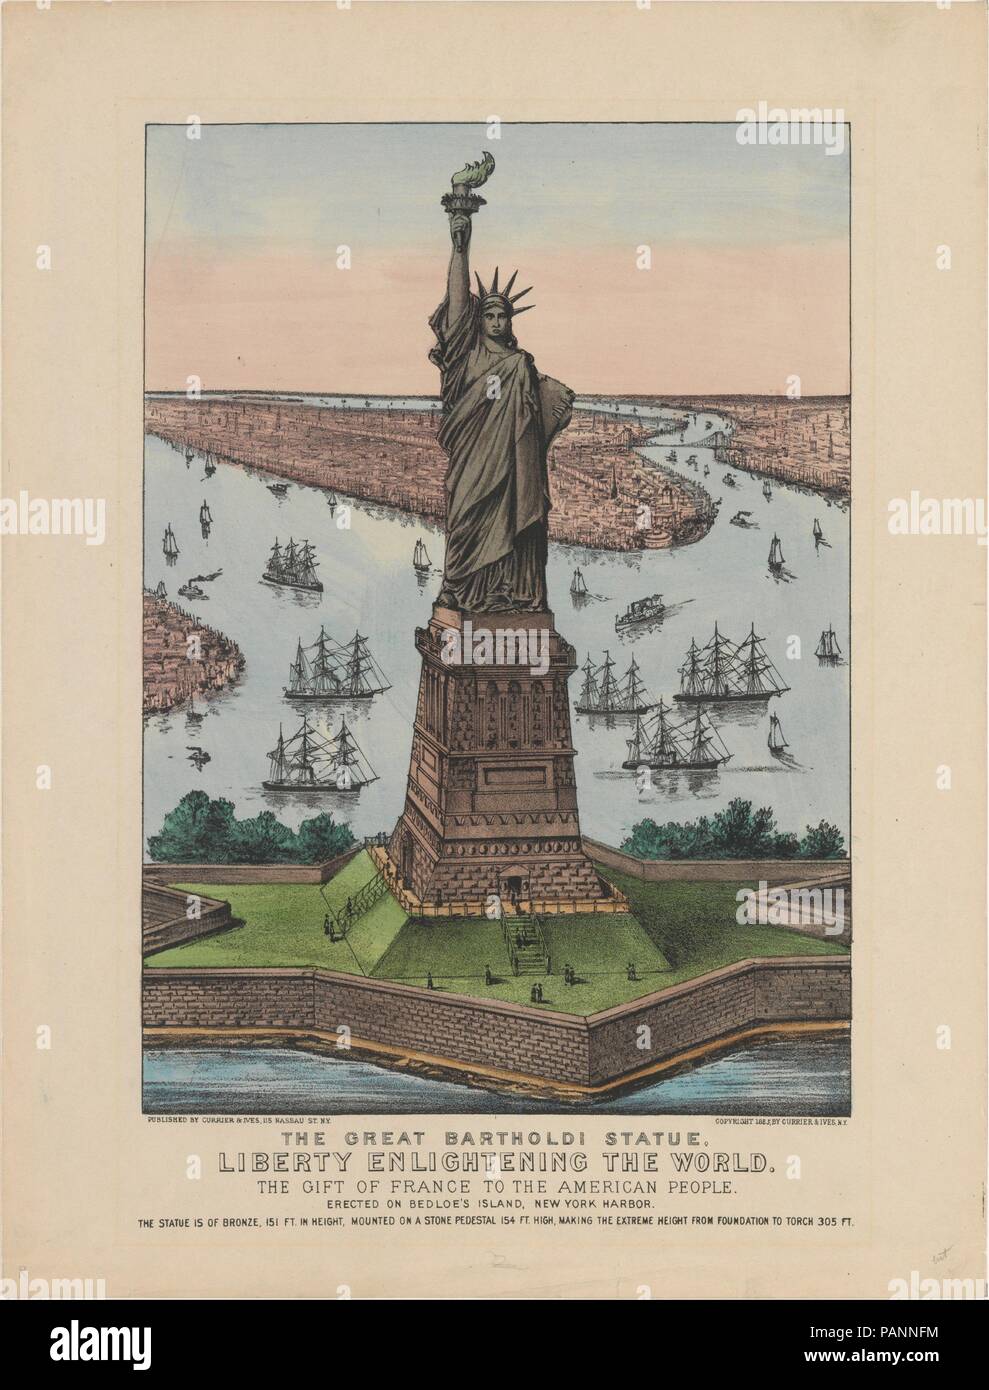 Die große Bartholdi Statue Liberty erleuchten die Welt. Abmessungen: Bild: 13 9/16 x 9 3/4 in. (34,5 x 24,7 cm) Blatt: 17 3/4 x 13 1/2 in. (45,1 x 34,3 cm). Herausgeber: Currier & Ives (American, Aktiv, New York, 1857-1907). Datum: 1885. Museum: Metropolitan Museum of Art, New York, USA. Stockfoto